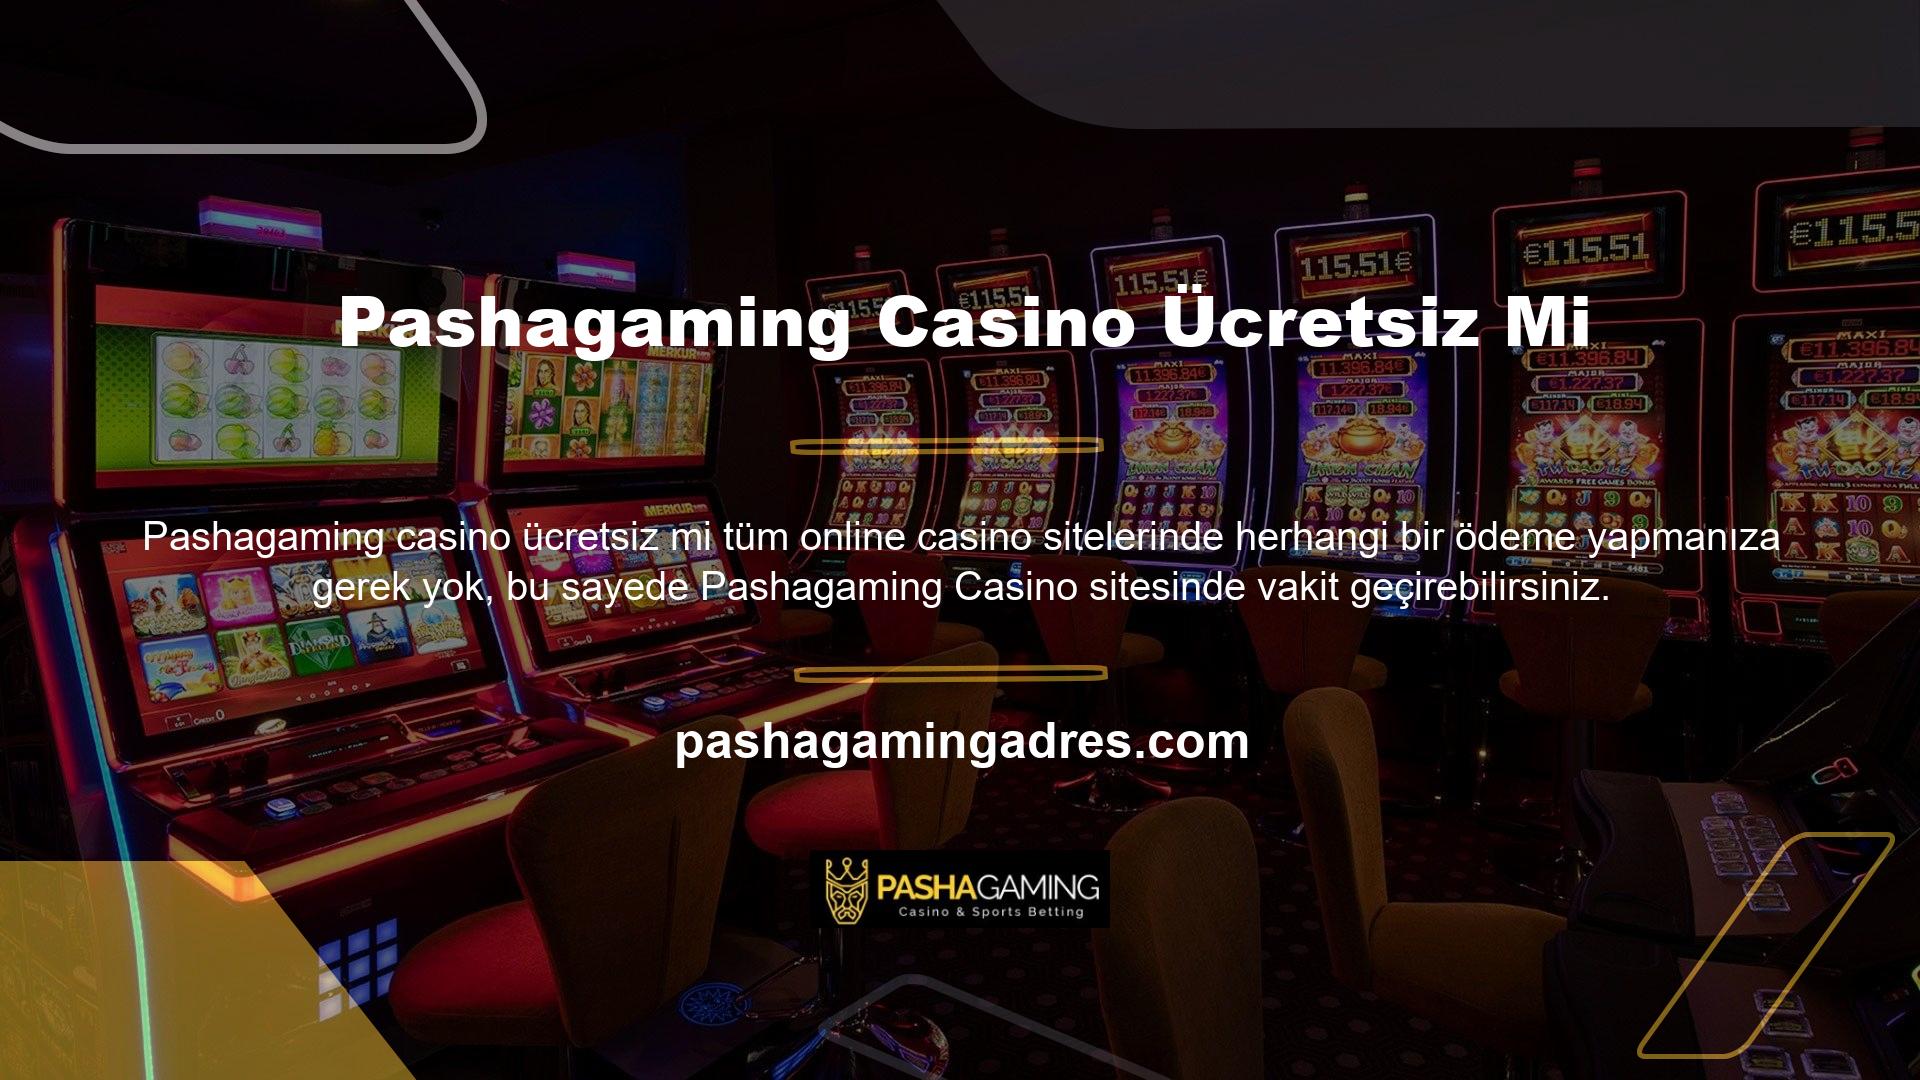 Pashagaming Casino ücretsiz midir? Kullanıcılar üye olmadan oyunun casino bölümünden ücretsiz olarak yararlanabilirler